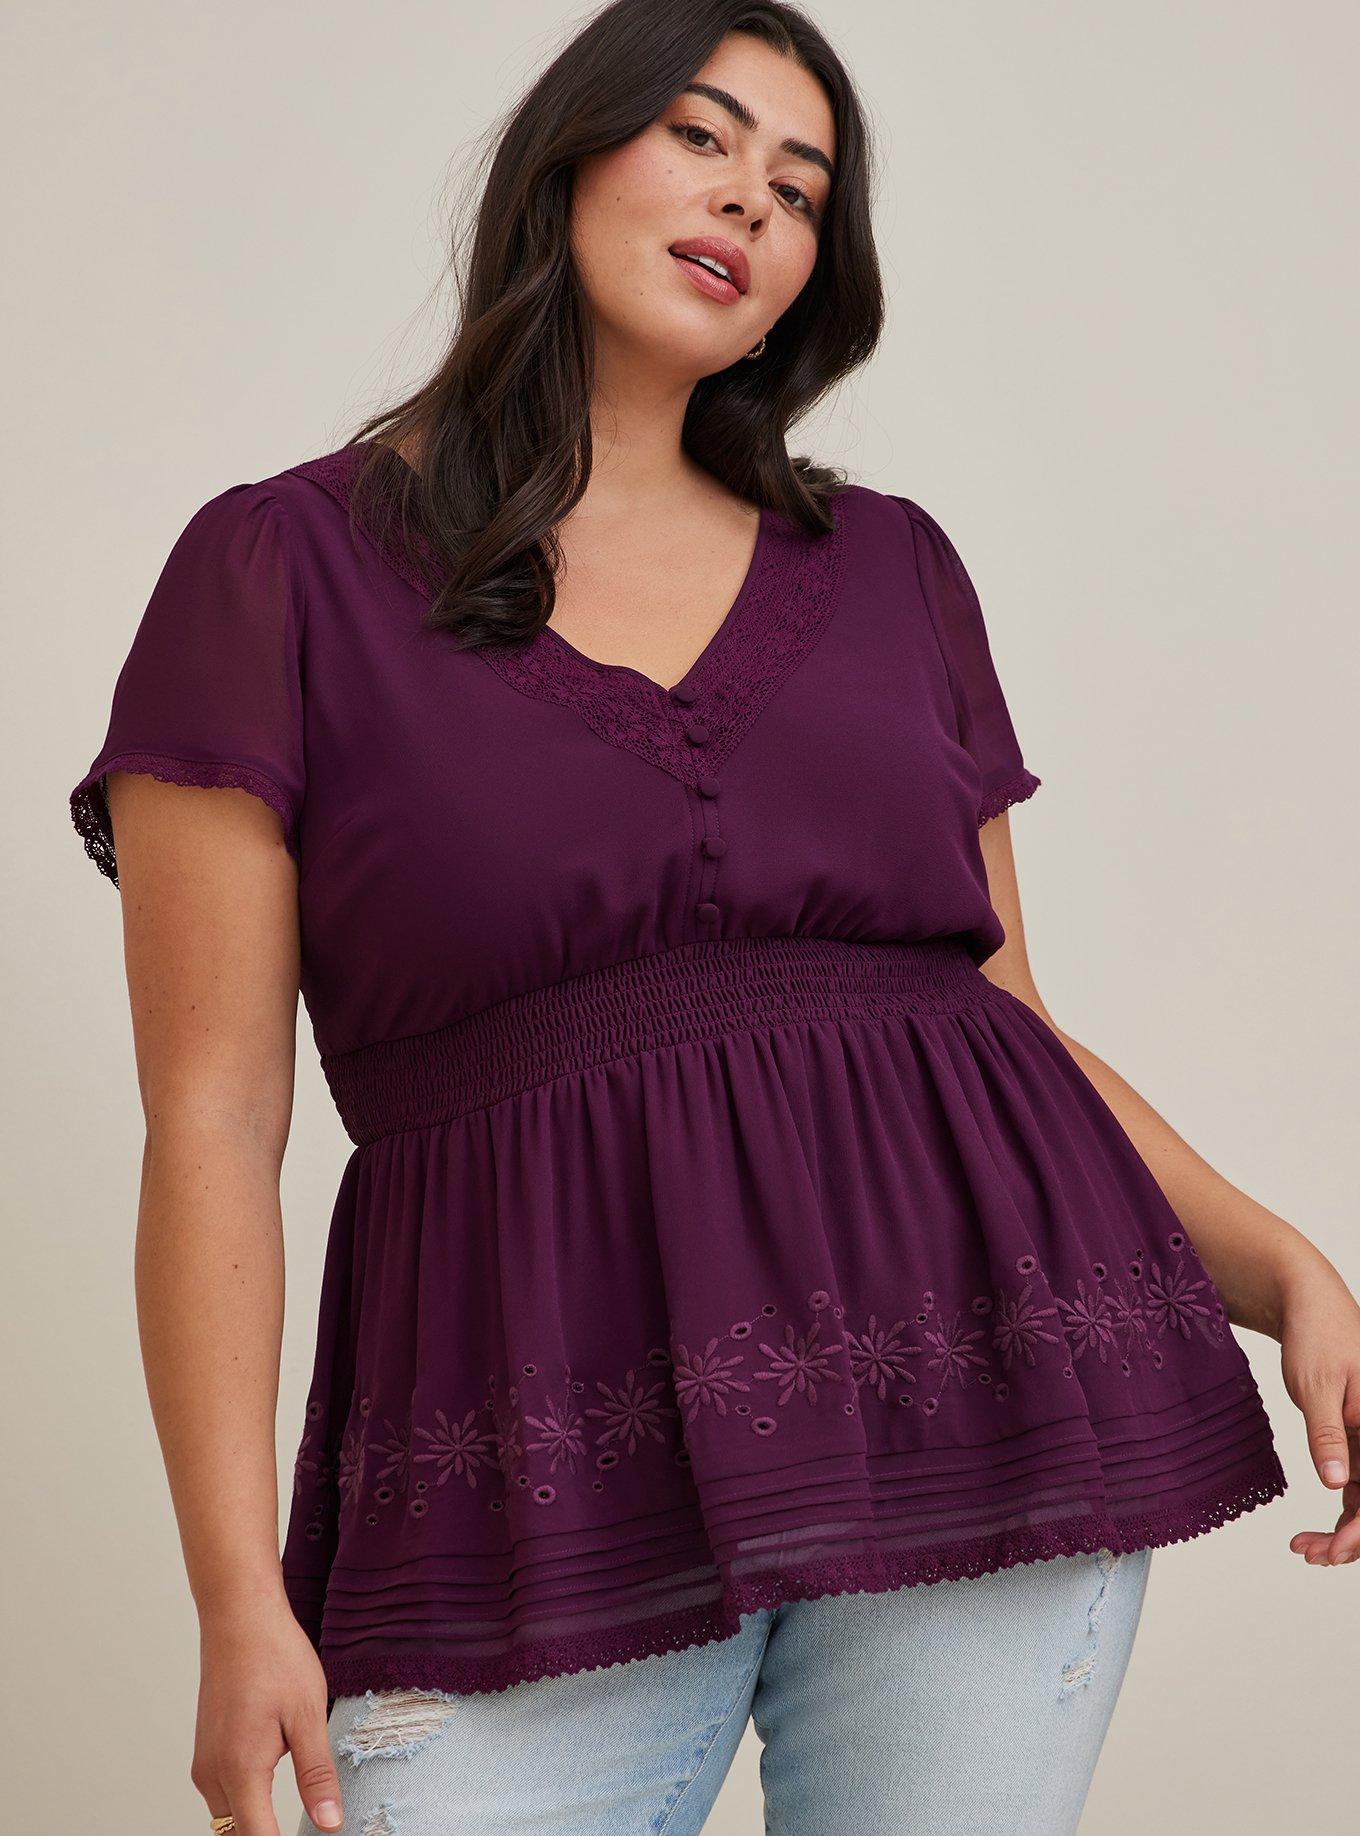 Women's Plus Size Peplum Dress - Double Ruffle / Semi-Sheer Lace